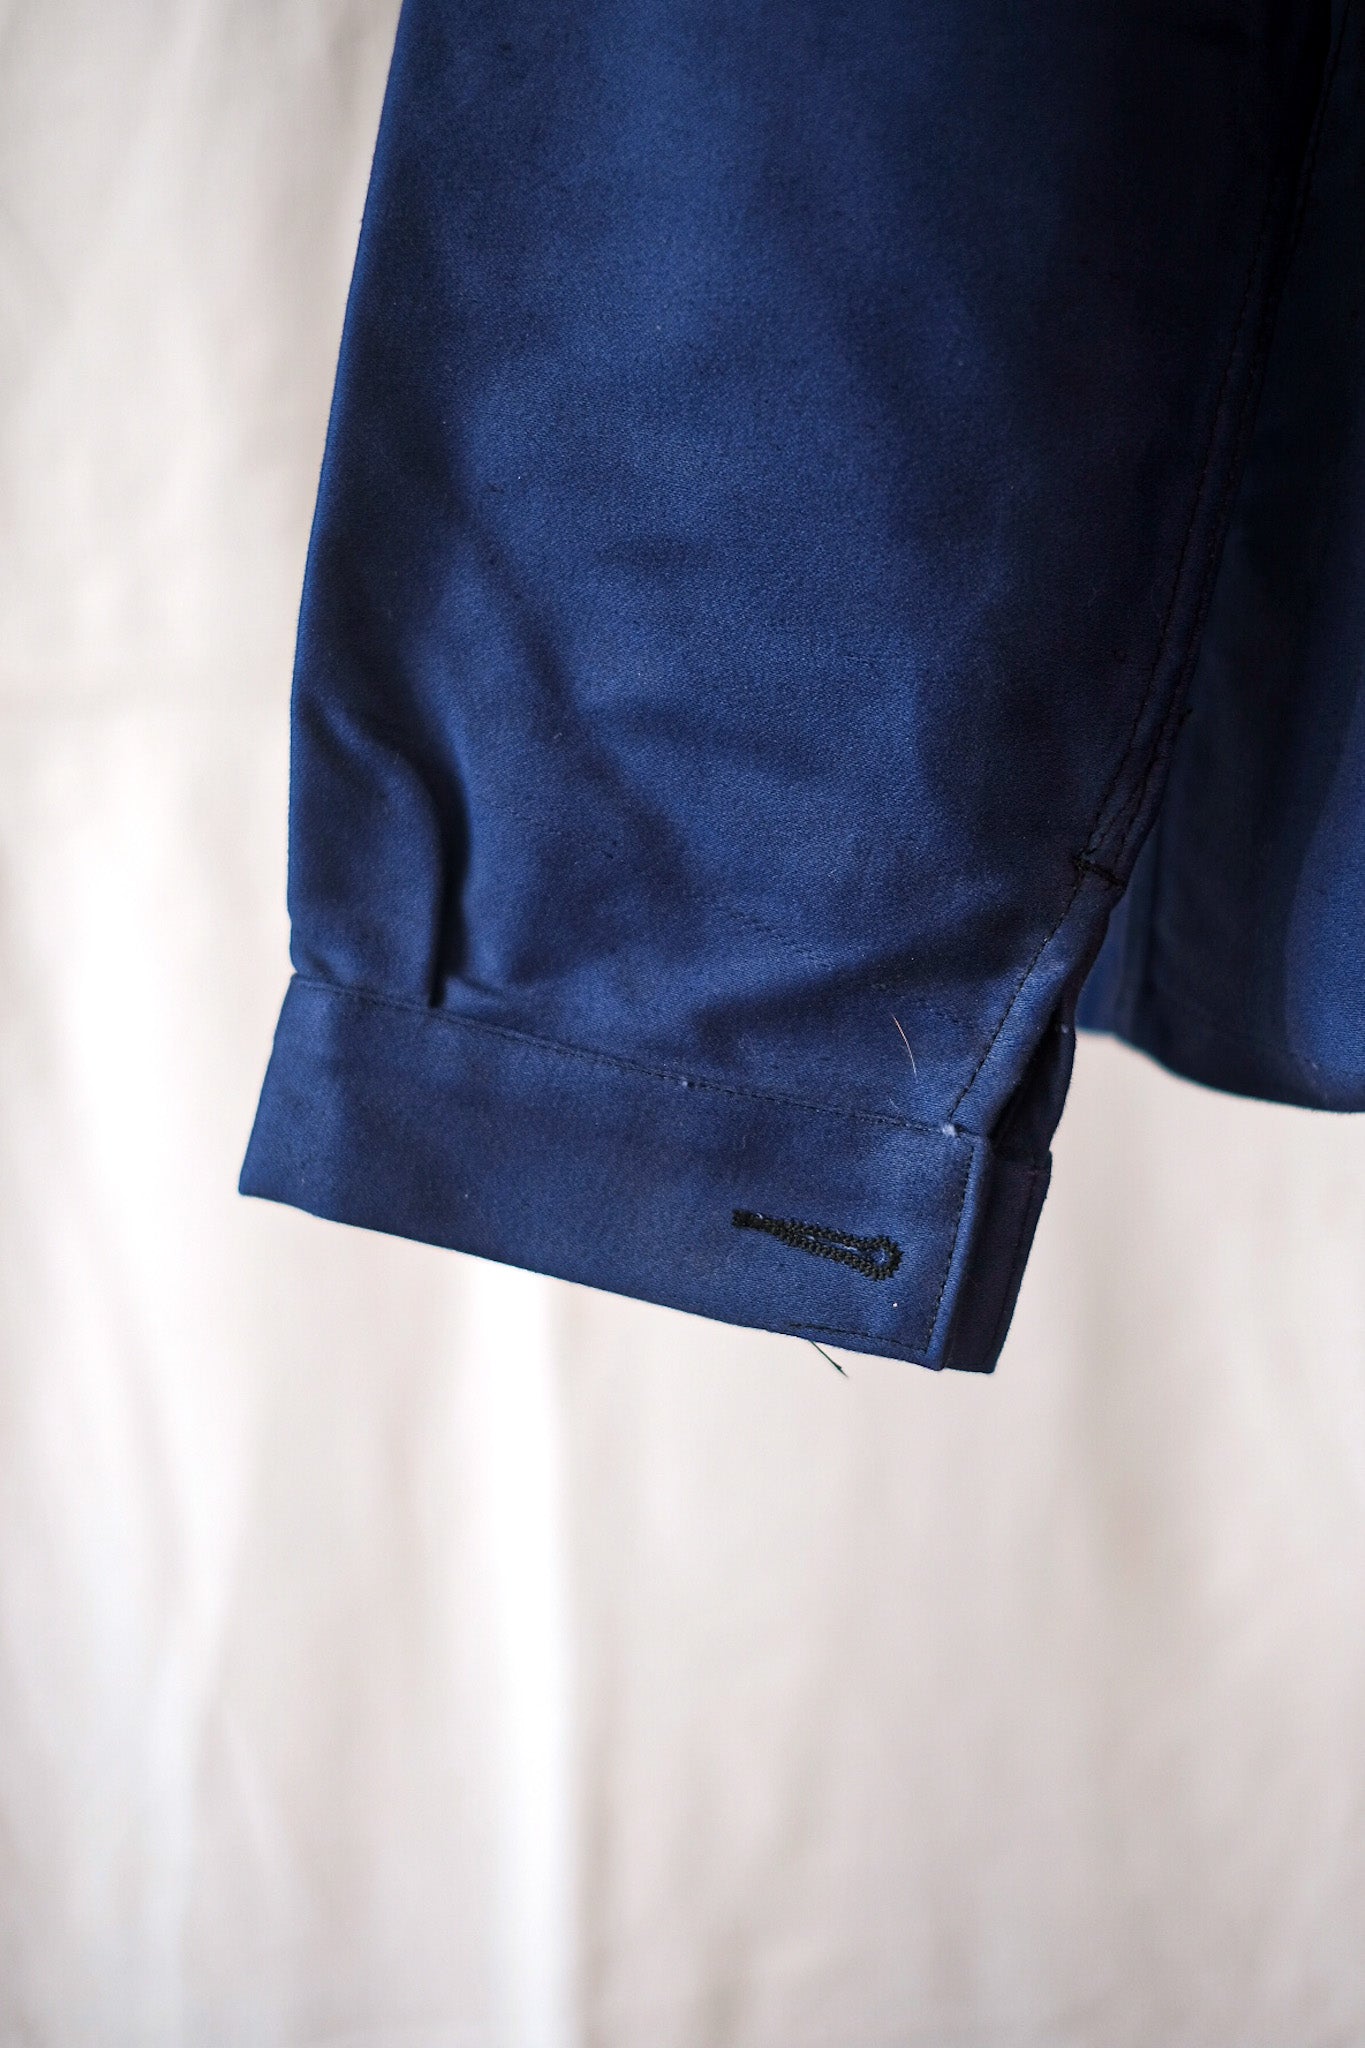 【~50's】French Vintage Blue Moleskin Work Jacket "Dead Stock"